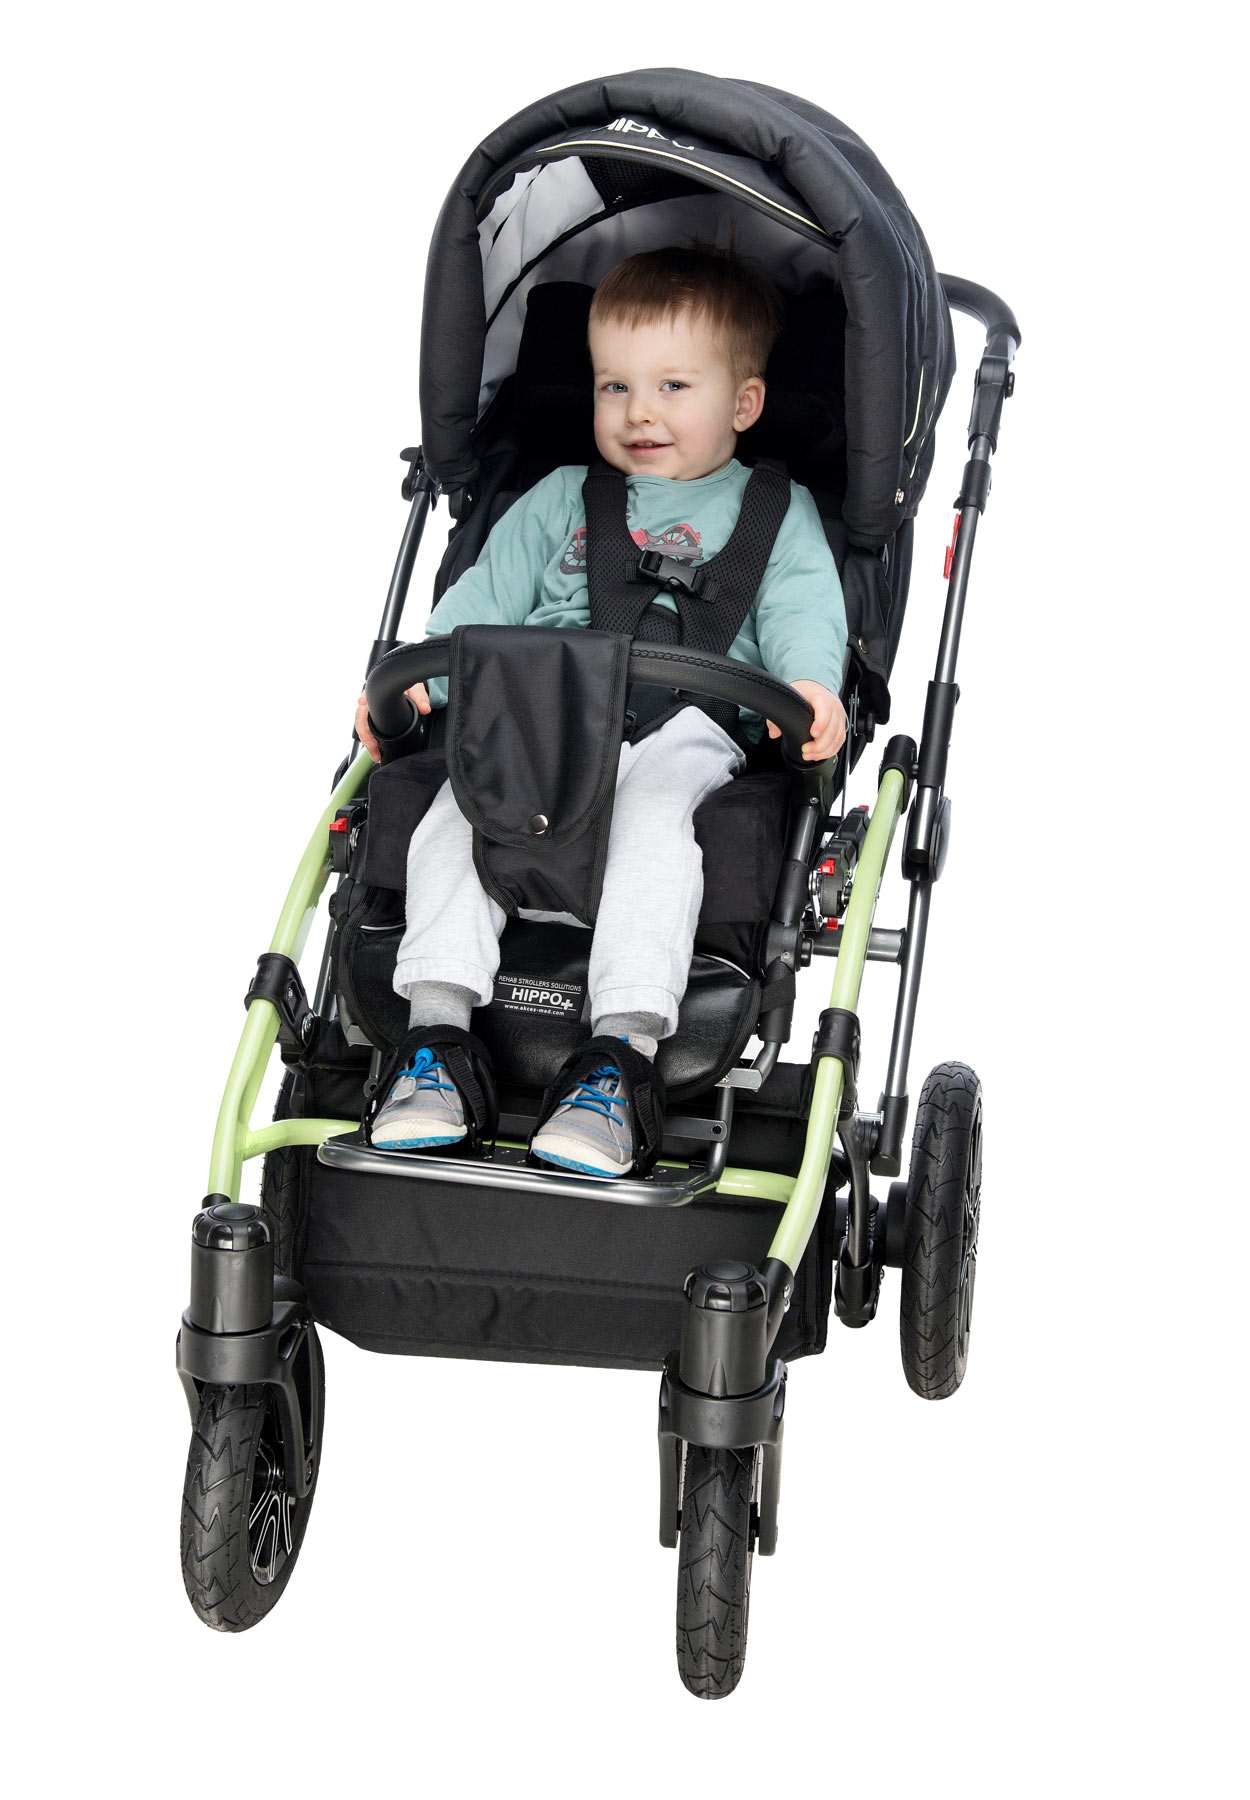 Коляска для крупного ребенка. Кресло-коляска для детей с ДЦП Akces-med Гиппо-2. Гиппо коляска для ДЦП 2. Гиппо коляска для ДЦП 2 размер. Детская инвалидная коляска AKCESMED Гиппо.